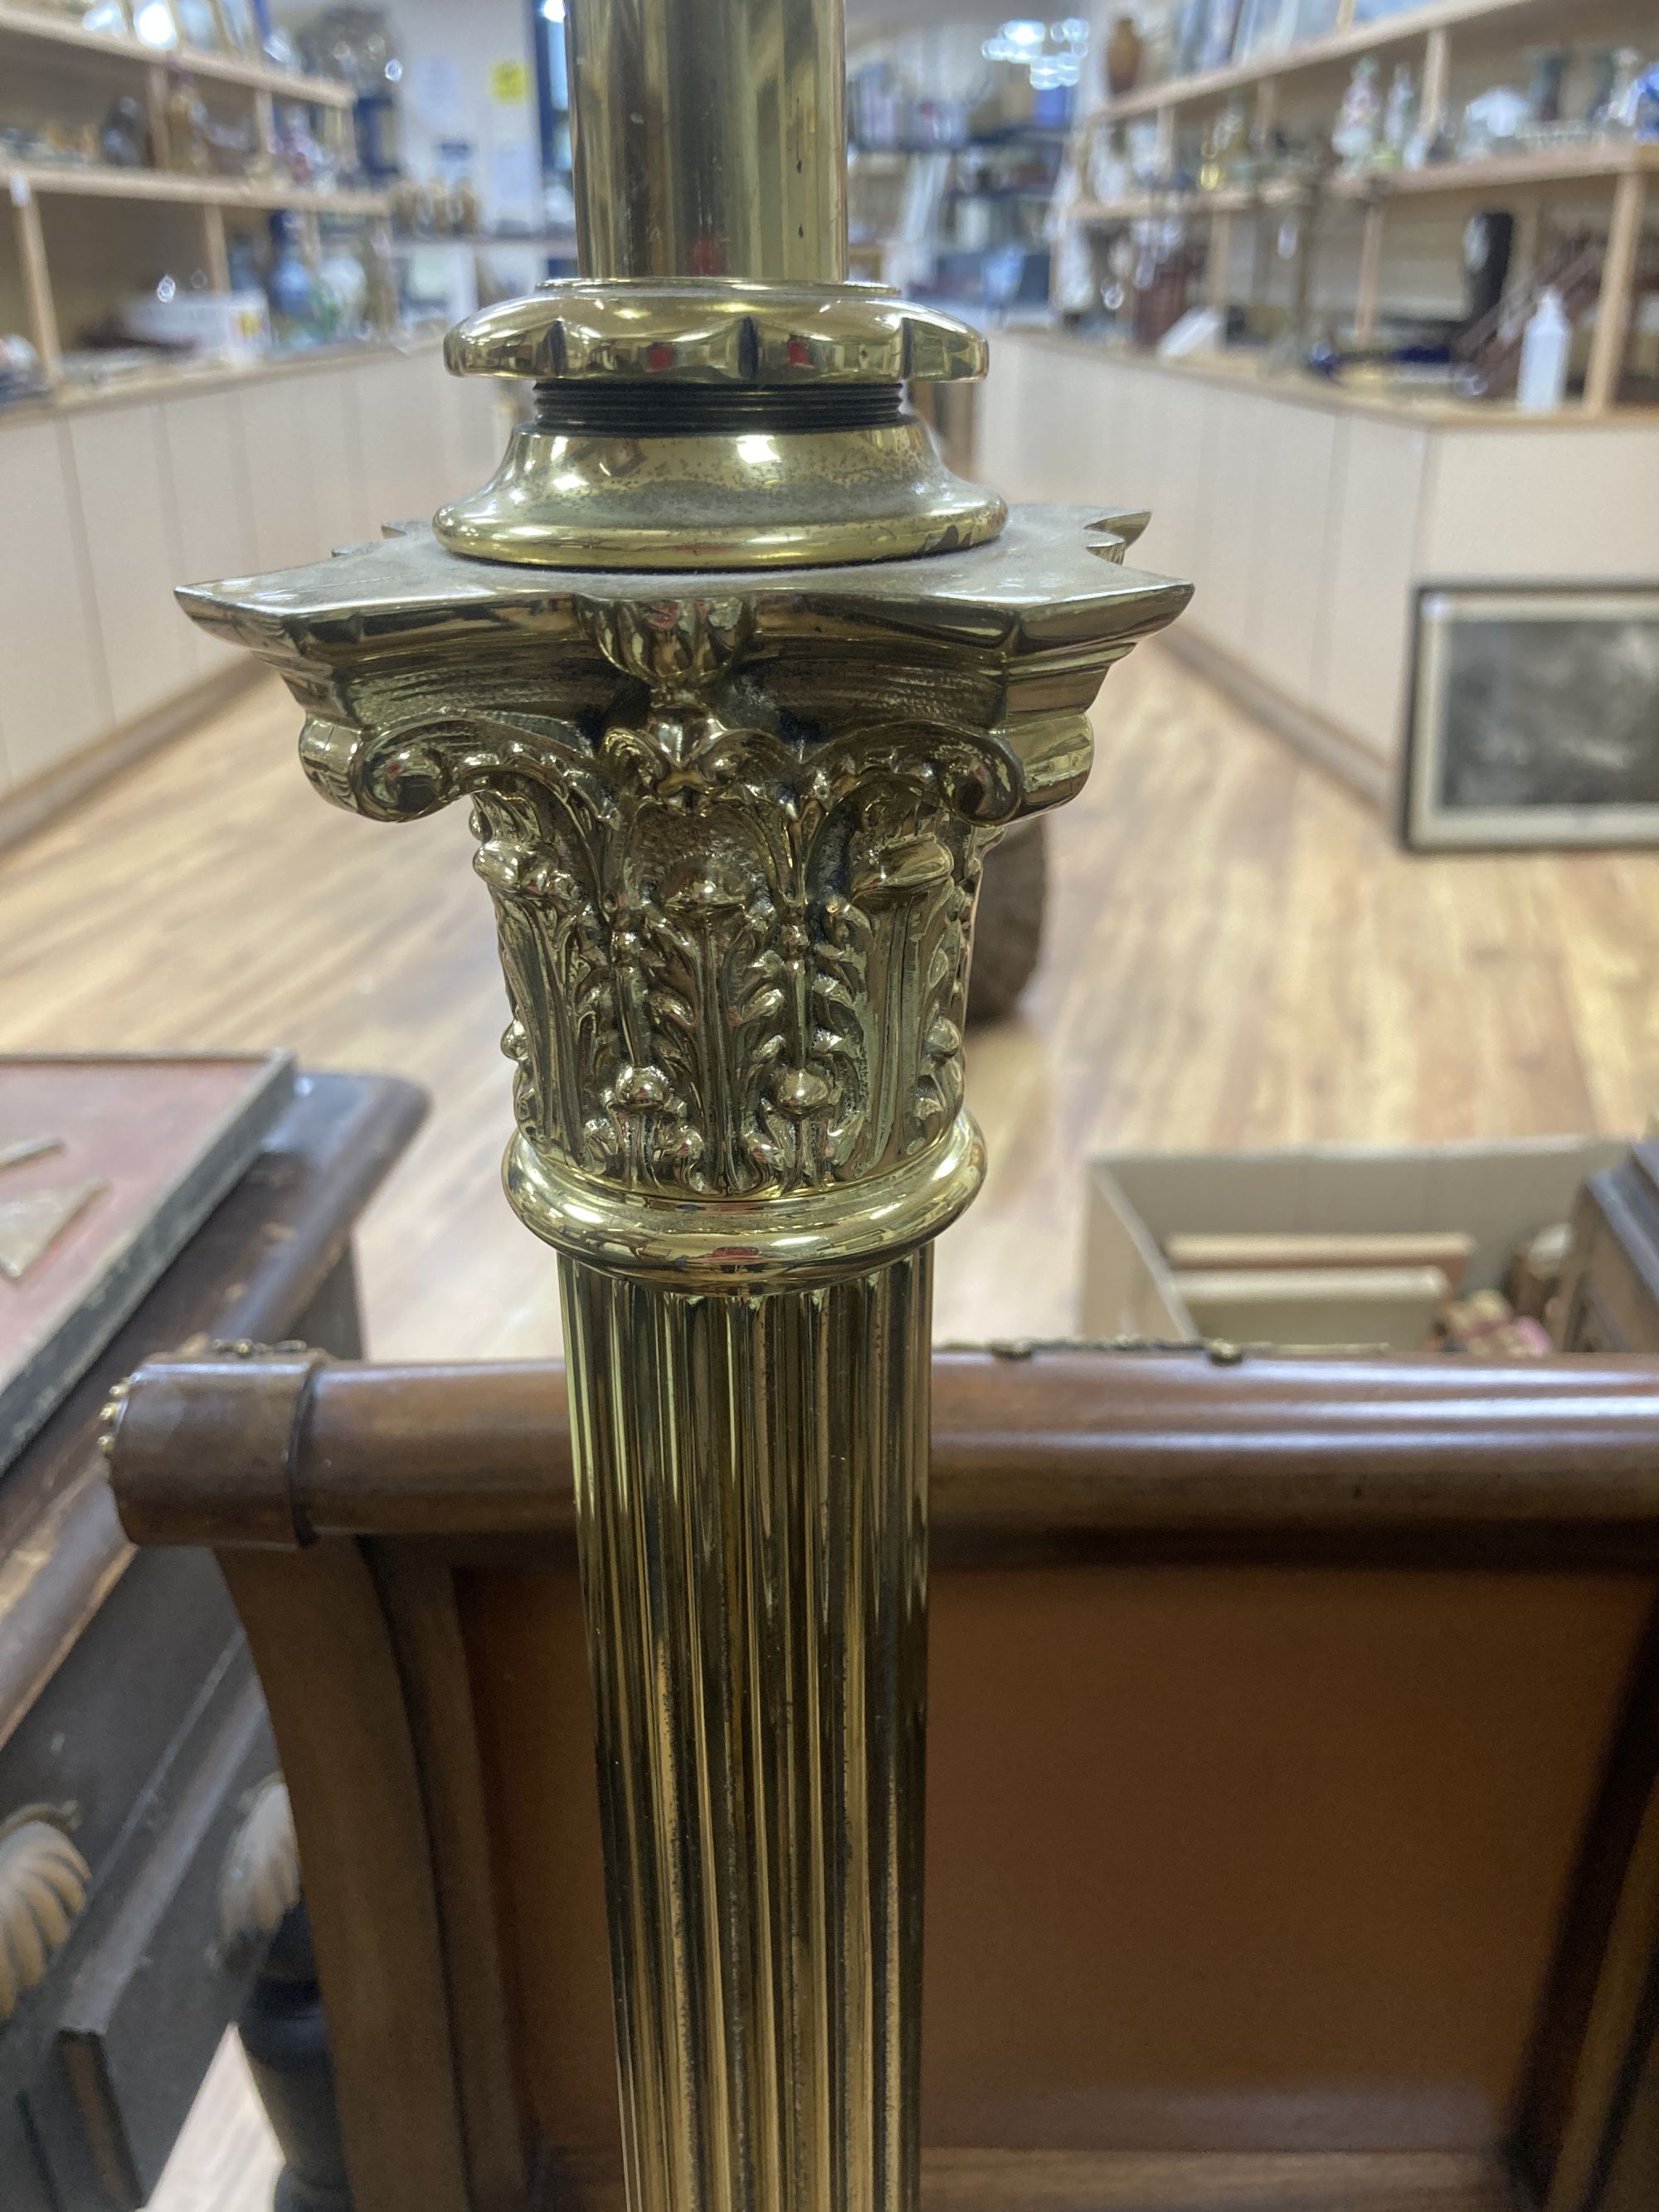 A Corinthian column brass telescopic standard lamp - Image 3 of 5